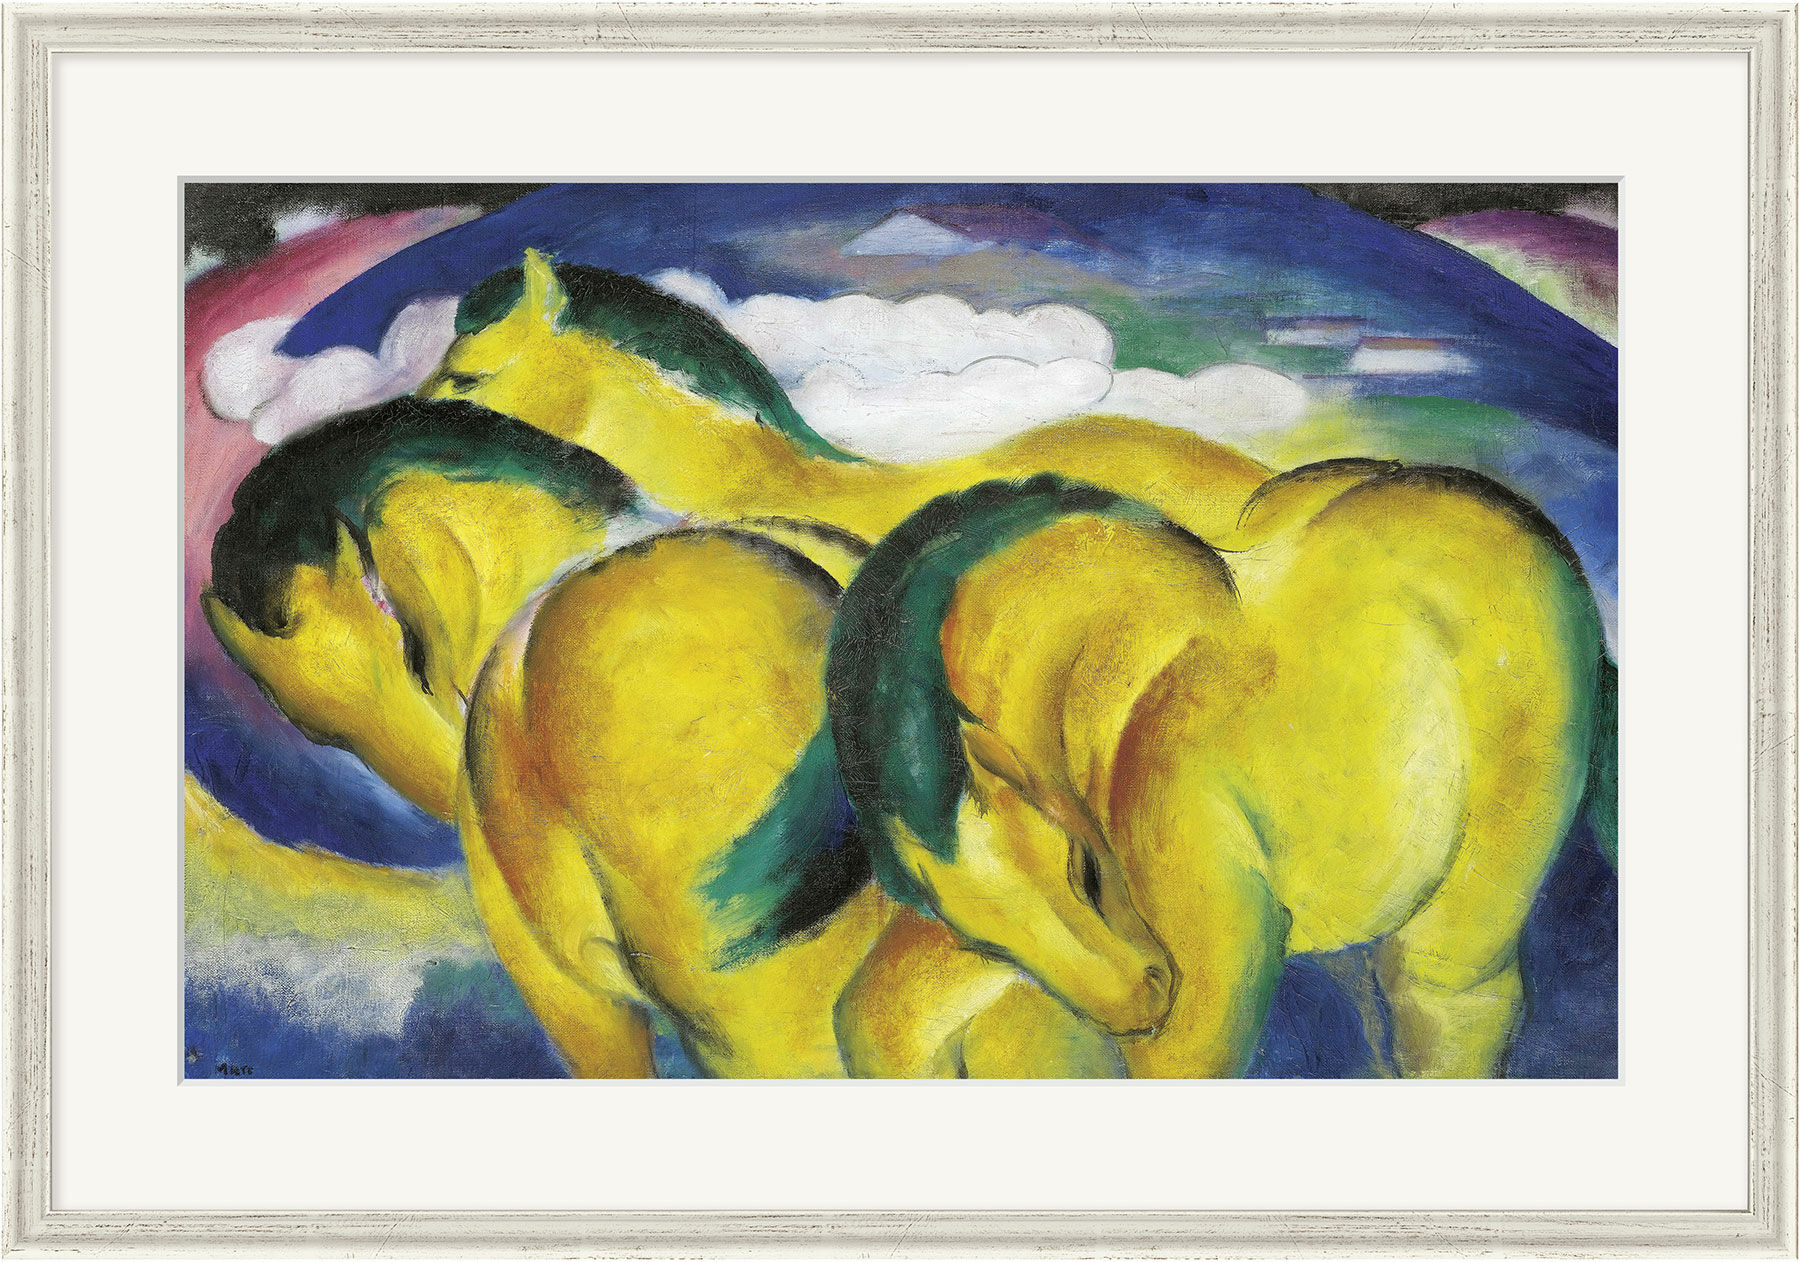 Billede "De små gule heste" (1912), indrammet von Franz Marc